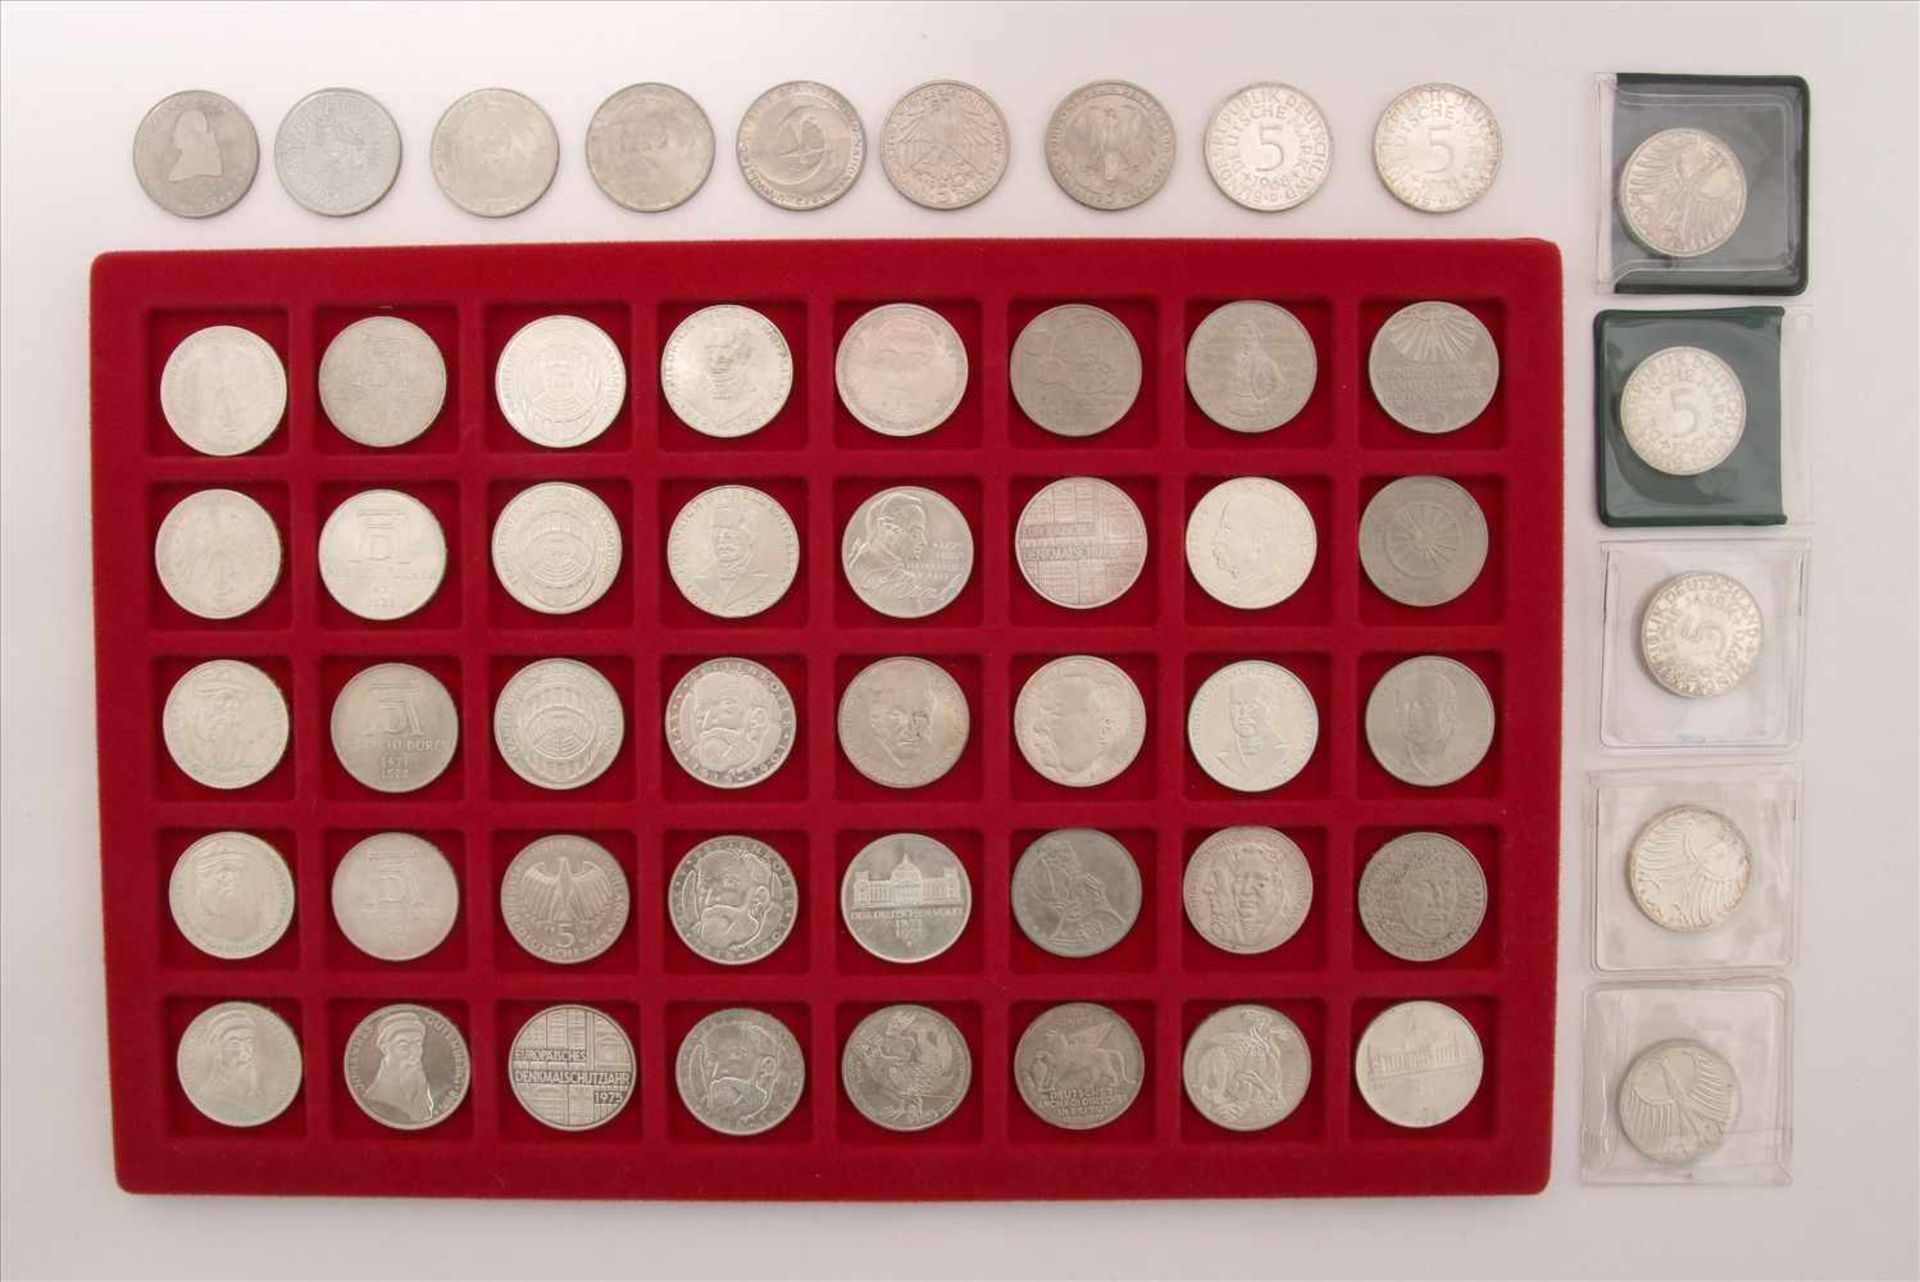 Konvolut Münzen54 diverse 5-DM Münzen. Zustand wie abgebildet. - Bild 2 aus 2